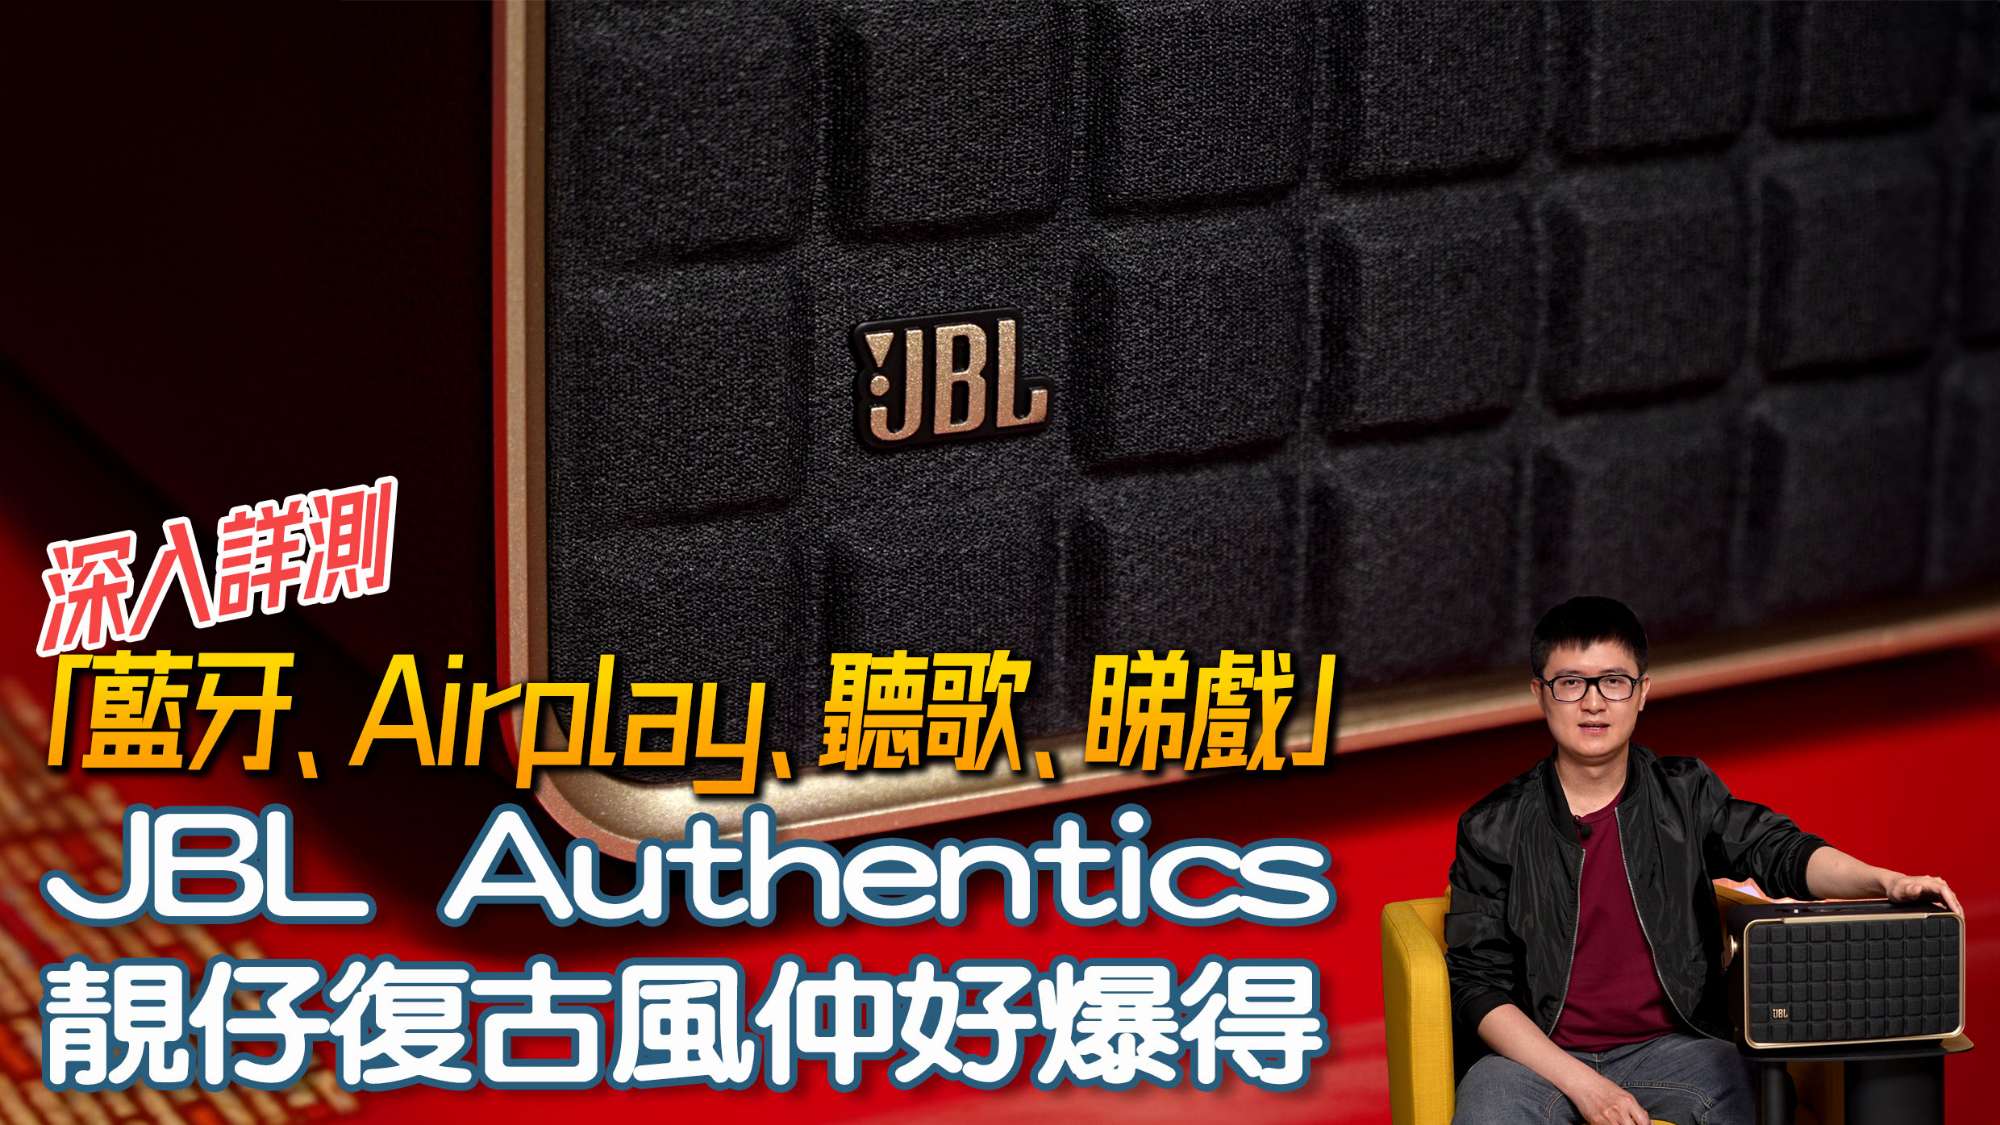 JBL Authentics 300 review forum copy.jpg